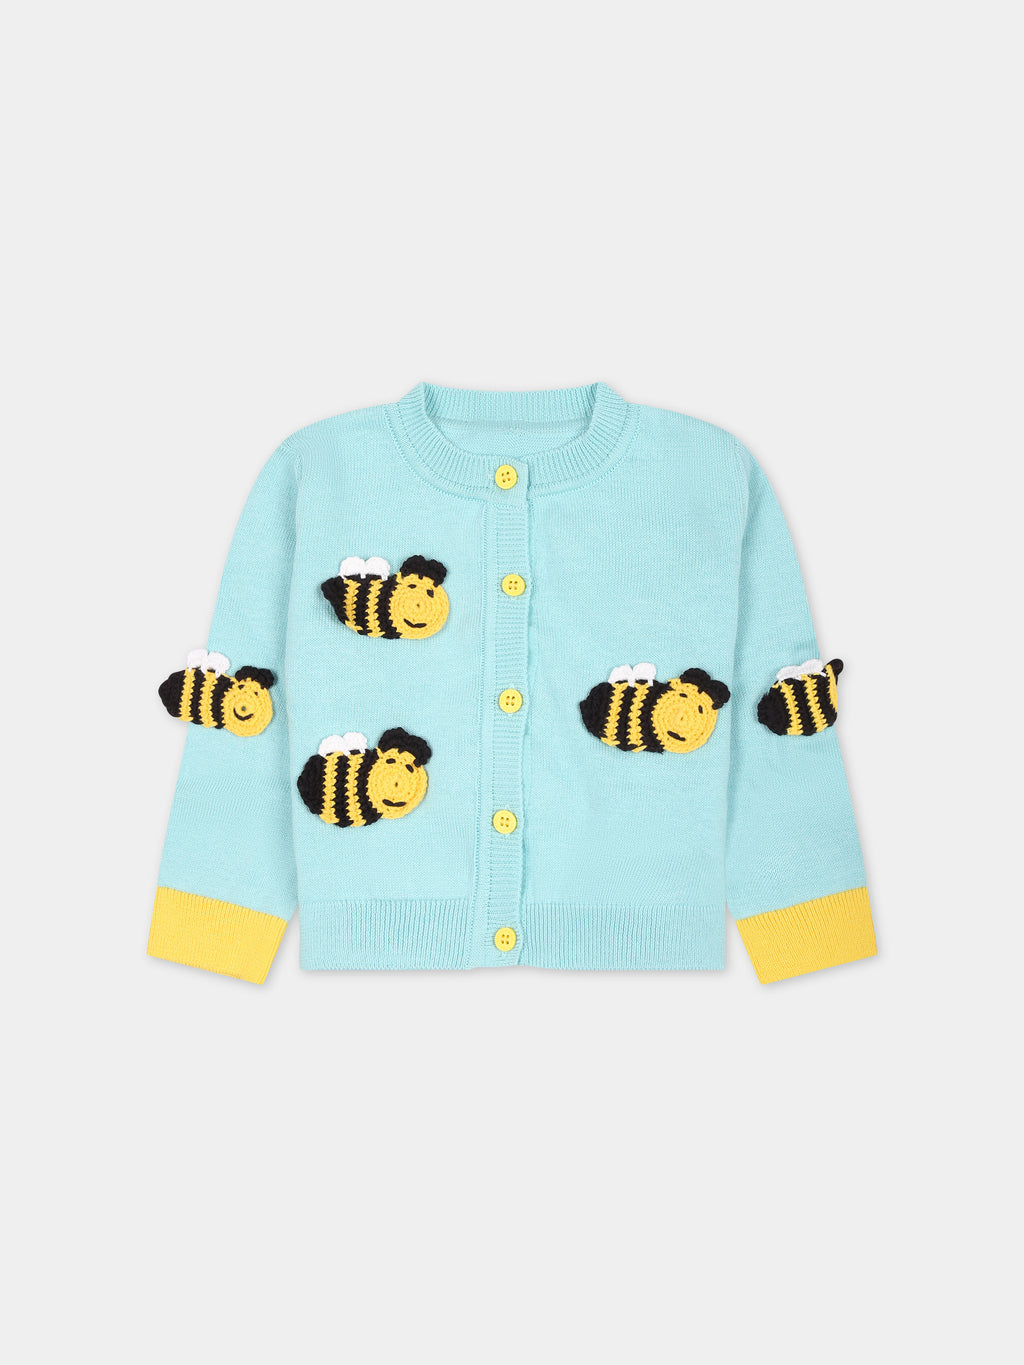 Cardigan  bleu cile pour bébé fille avec abeilles